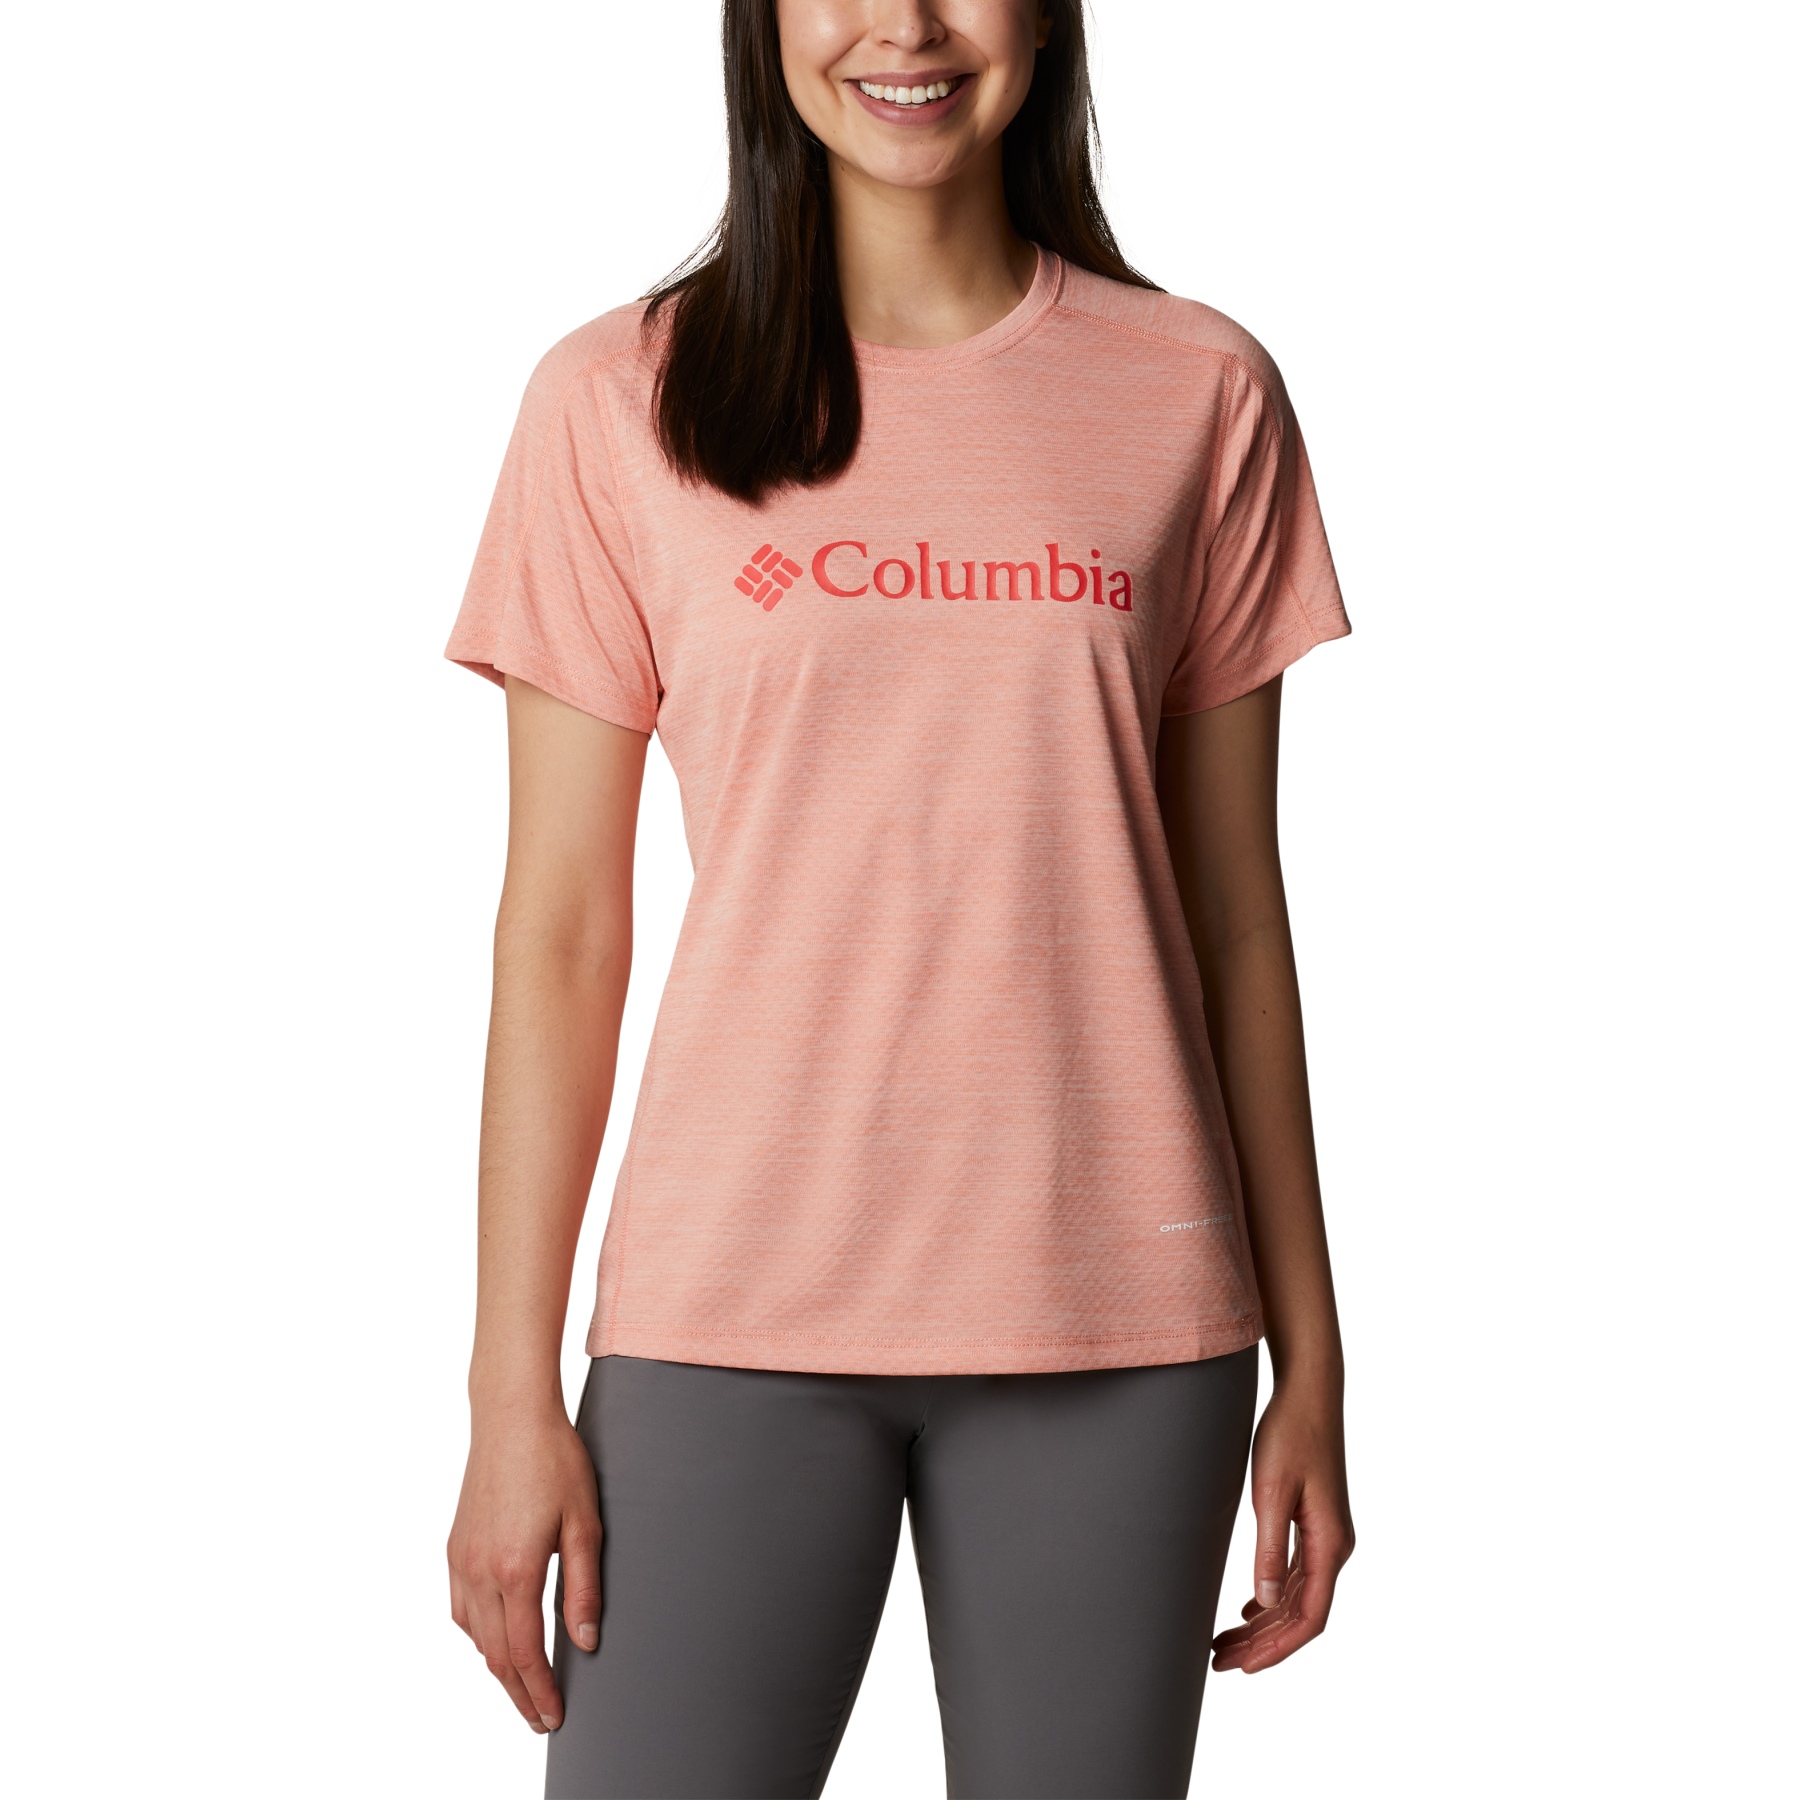 Produktbild von Columbia Zero Rules Graphic Crew T-Shirt Damen - Coral Reef Heather Gem Columbia